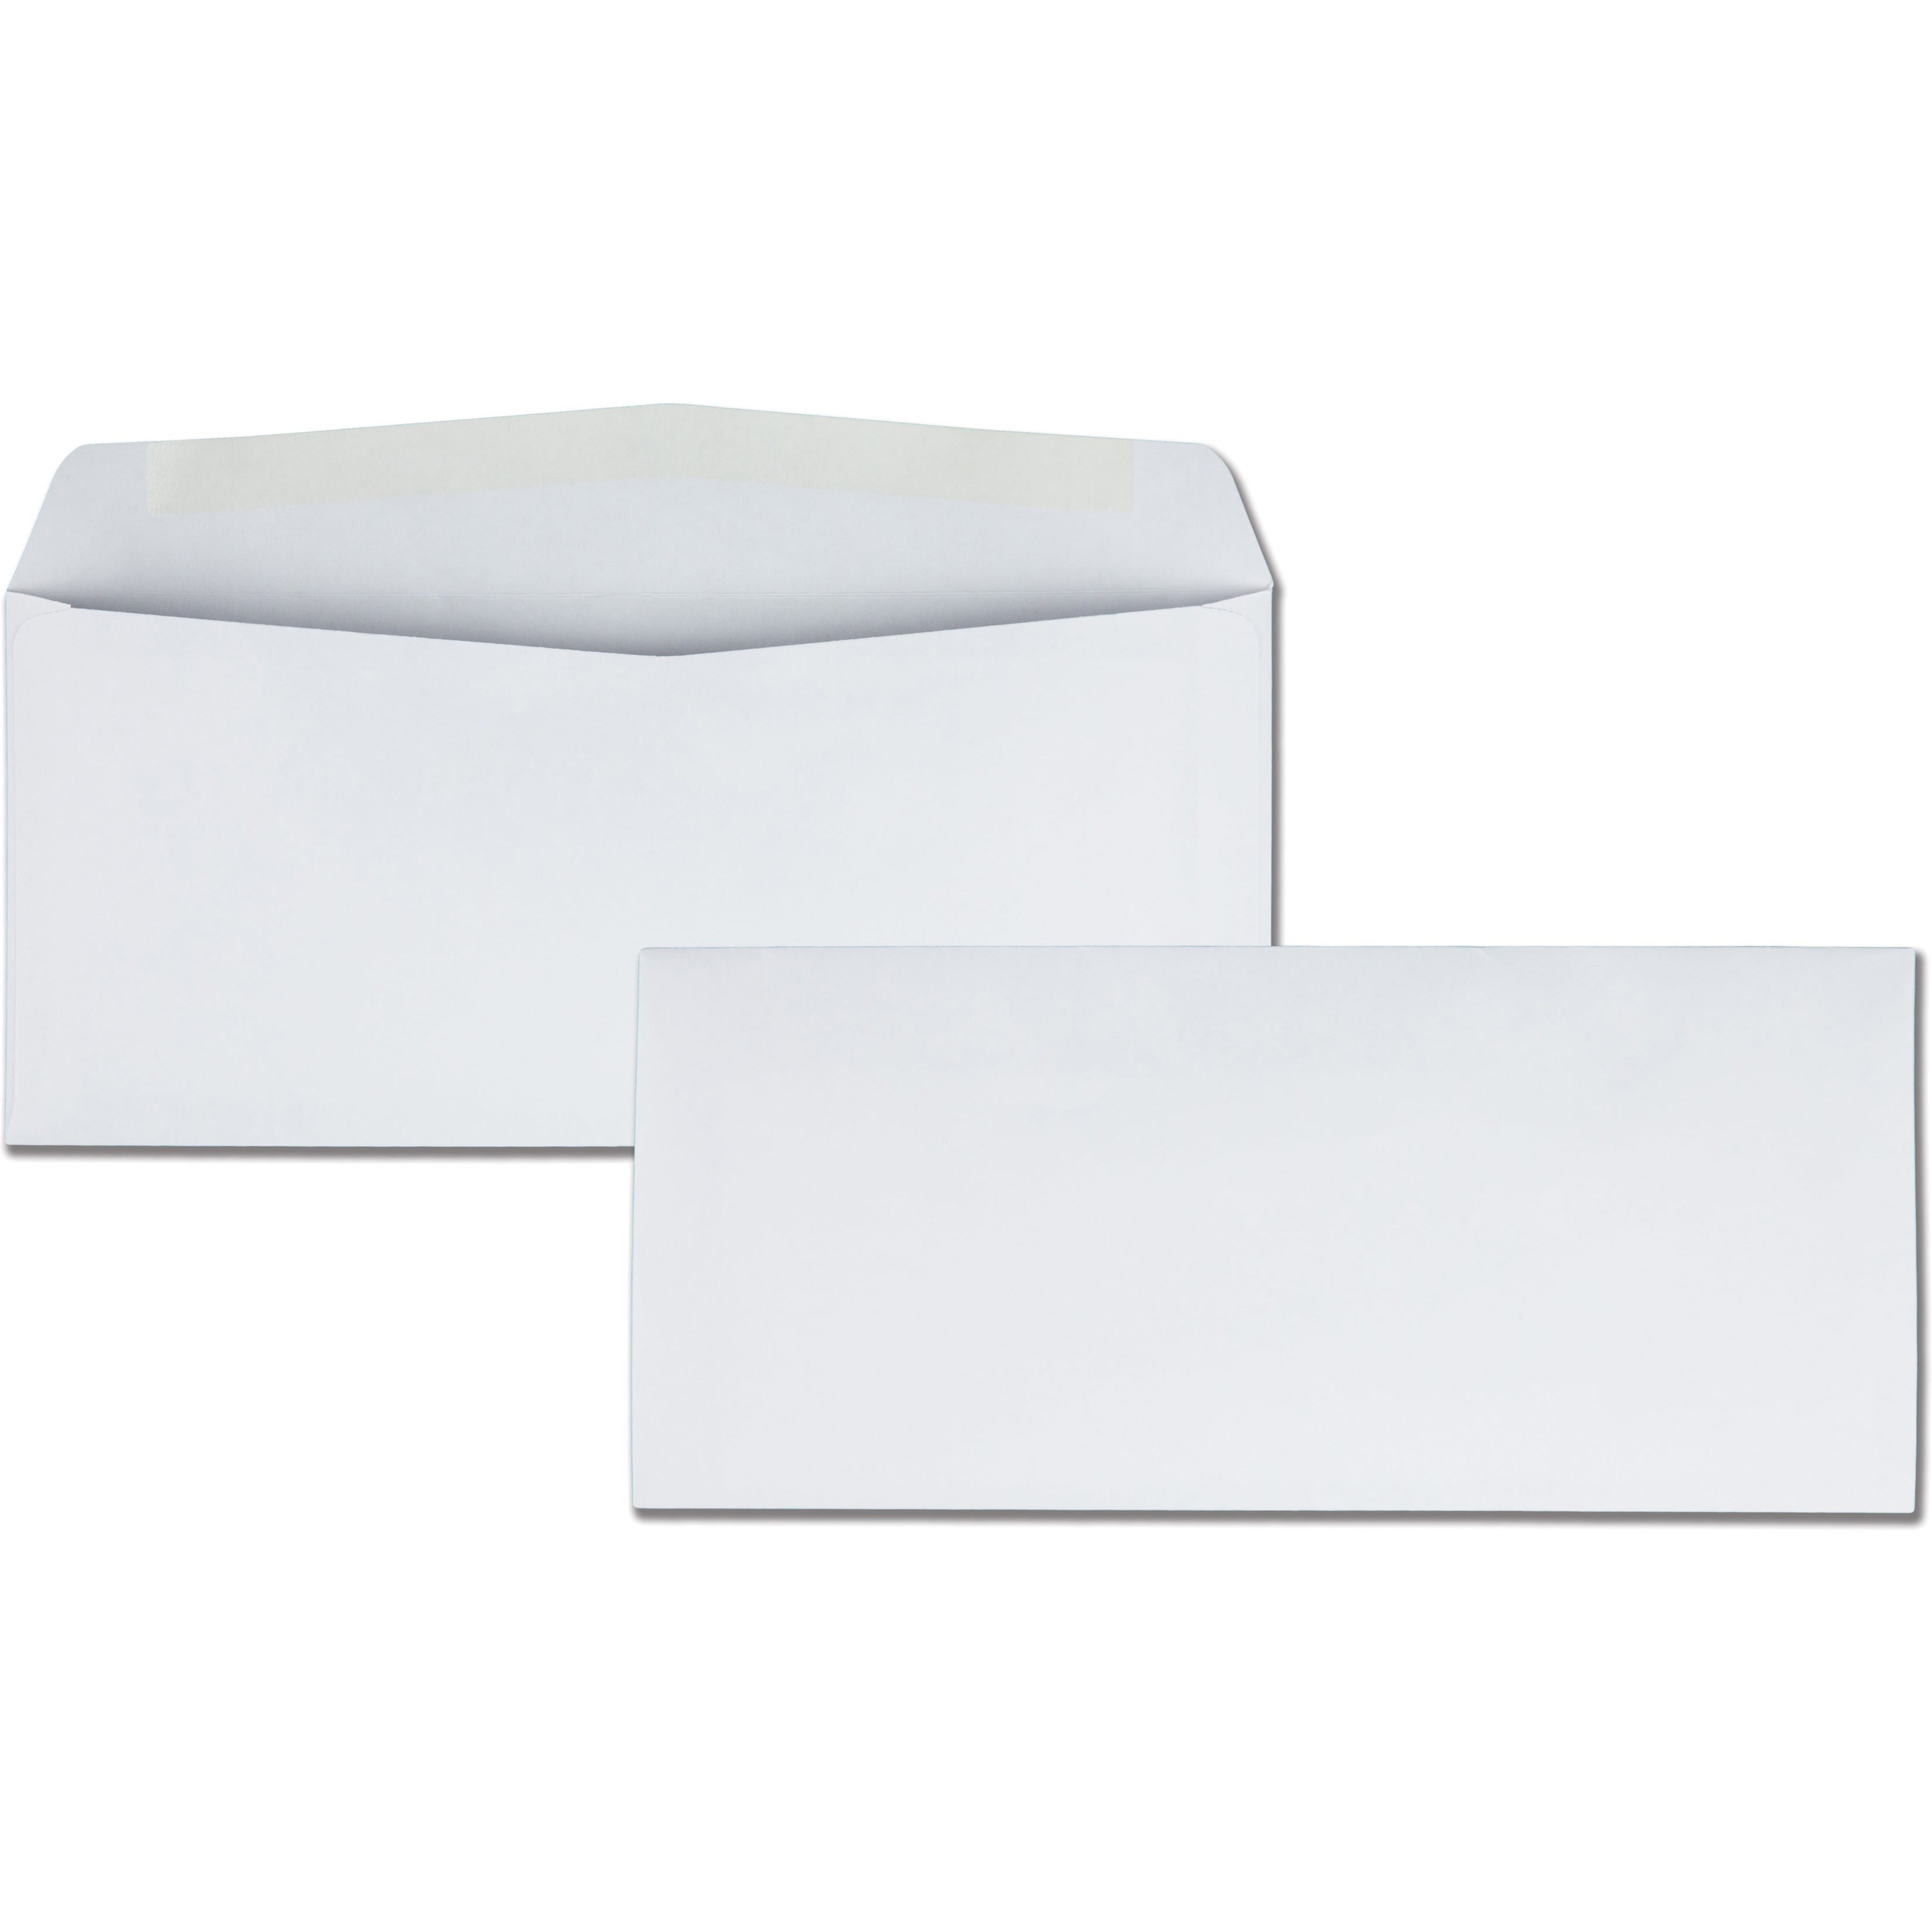 JAM Paper #11 Business Commercial Envelopes 4.5 x 10.375 White Bulk 500/Box 701936235787 